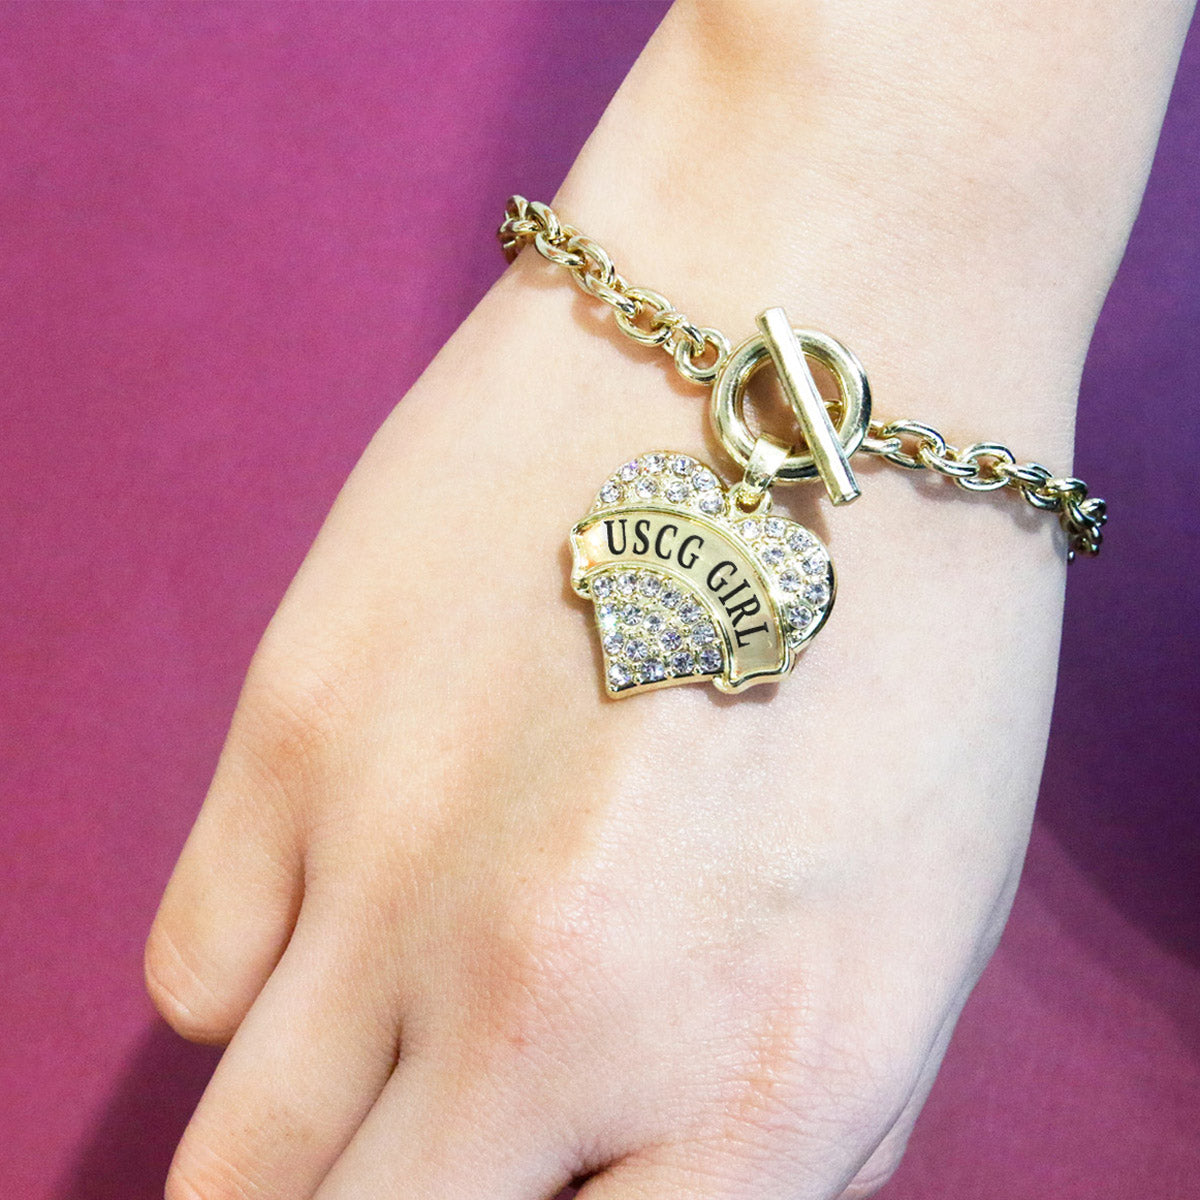 Gold USCG Girl Pave Heart Charm Toggle Bracelet